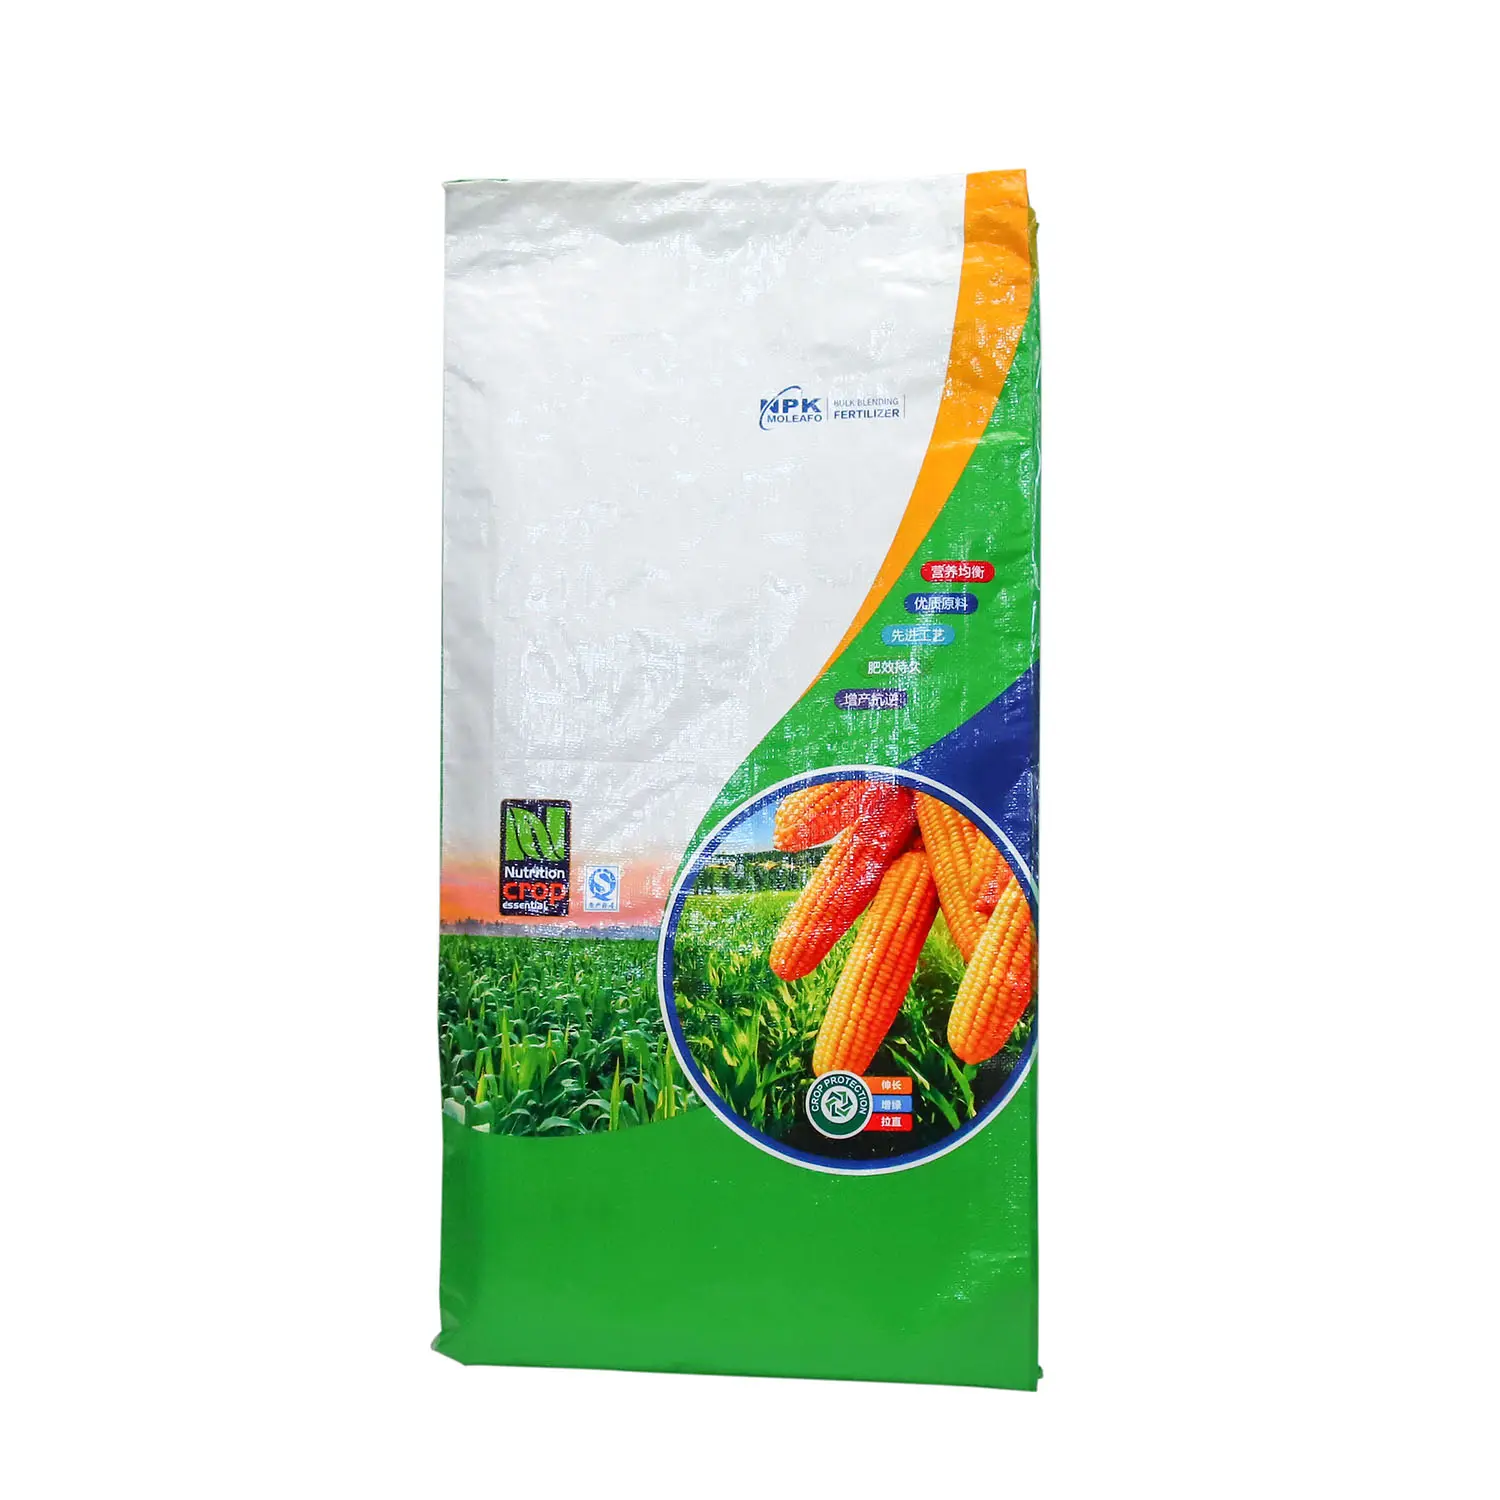 Vazio bopp laminado plástico polipropileno pp tecido saco de solo 25kg 50kg ureia fertilizante orgânico embalagem saco com pe linner